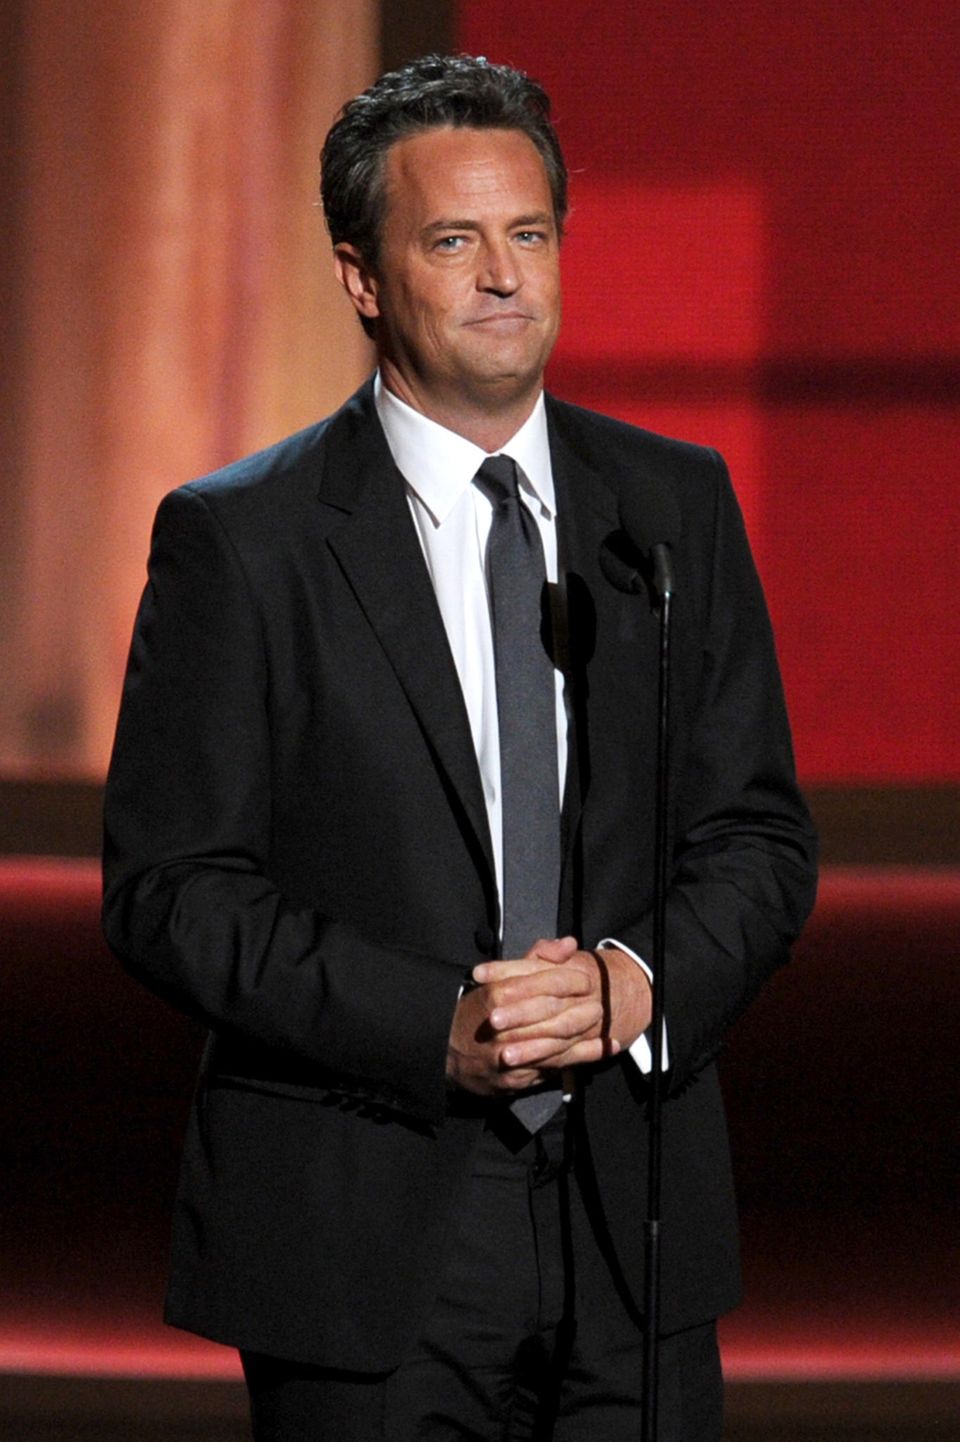 Matthew Perry, 54, ist vor allem bekannt aus der Serie "Friends" – in eine seiner Kolleginnen war er während der Dreharbeiten ganz schön verknallt. Er fragte sie sogar nach einem Date, wurde aber abgelehnt, erzählte der Schauspieler. "Es machte es schwierig, zur Arbeit zu gehen", so Perry in einem Exklusiv-Interview mit "ABC News". Er habe versucht, sich unauffällig zu verhalten und sich beispielsweise gefragt, wie lange er sie denn wohl anschauen könne, habe Dinge gedacht wie: "Sind drei Sekunden zu lang?" – Bis heute sind die beiden "Friends" geblieben. Aber er ist nicht der Einzige, der über beide Ohren in sie verknallt war...